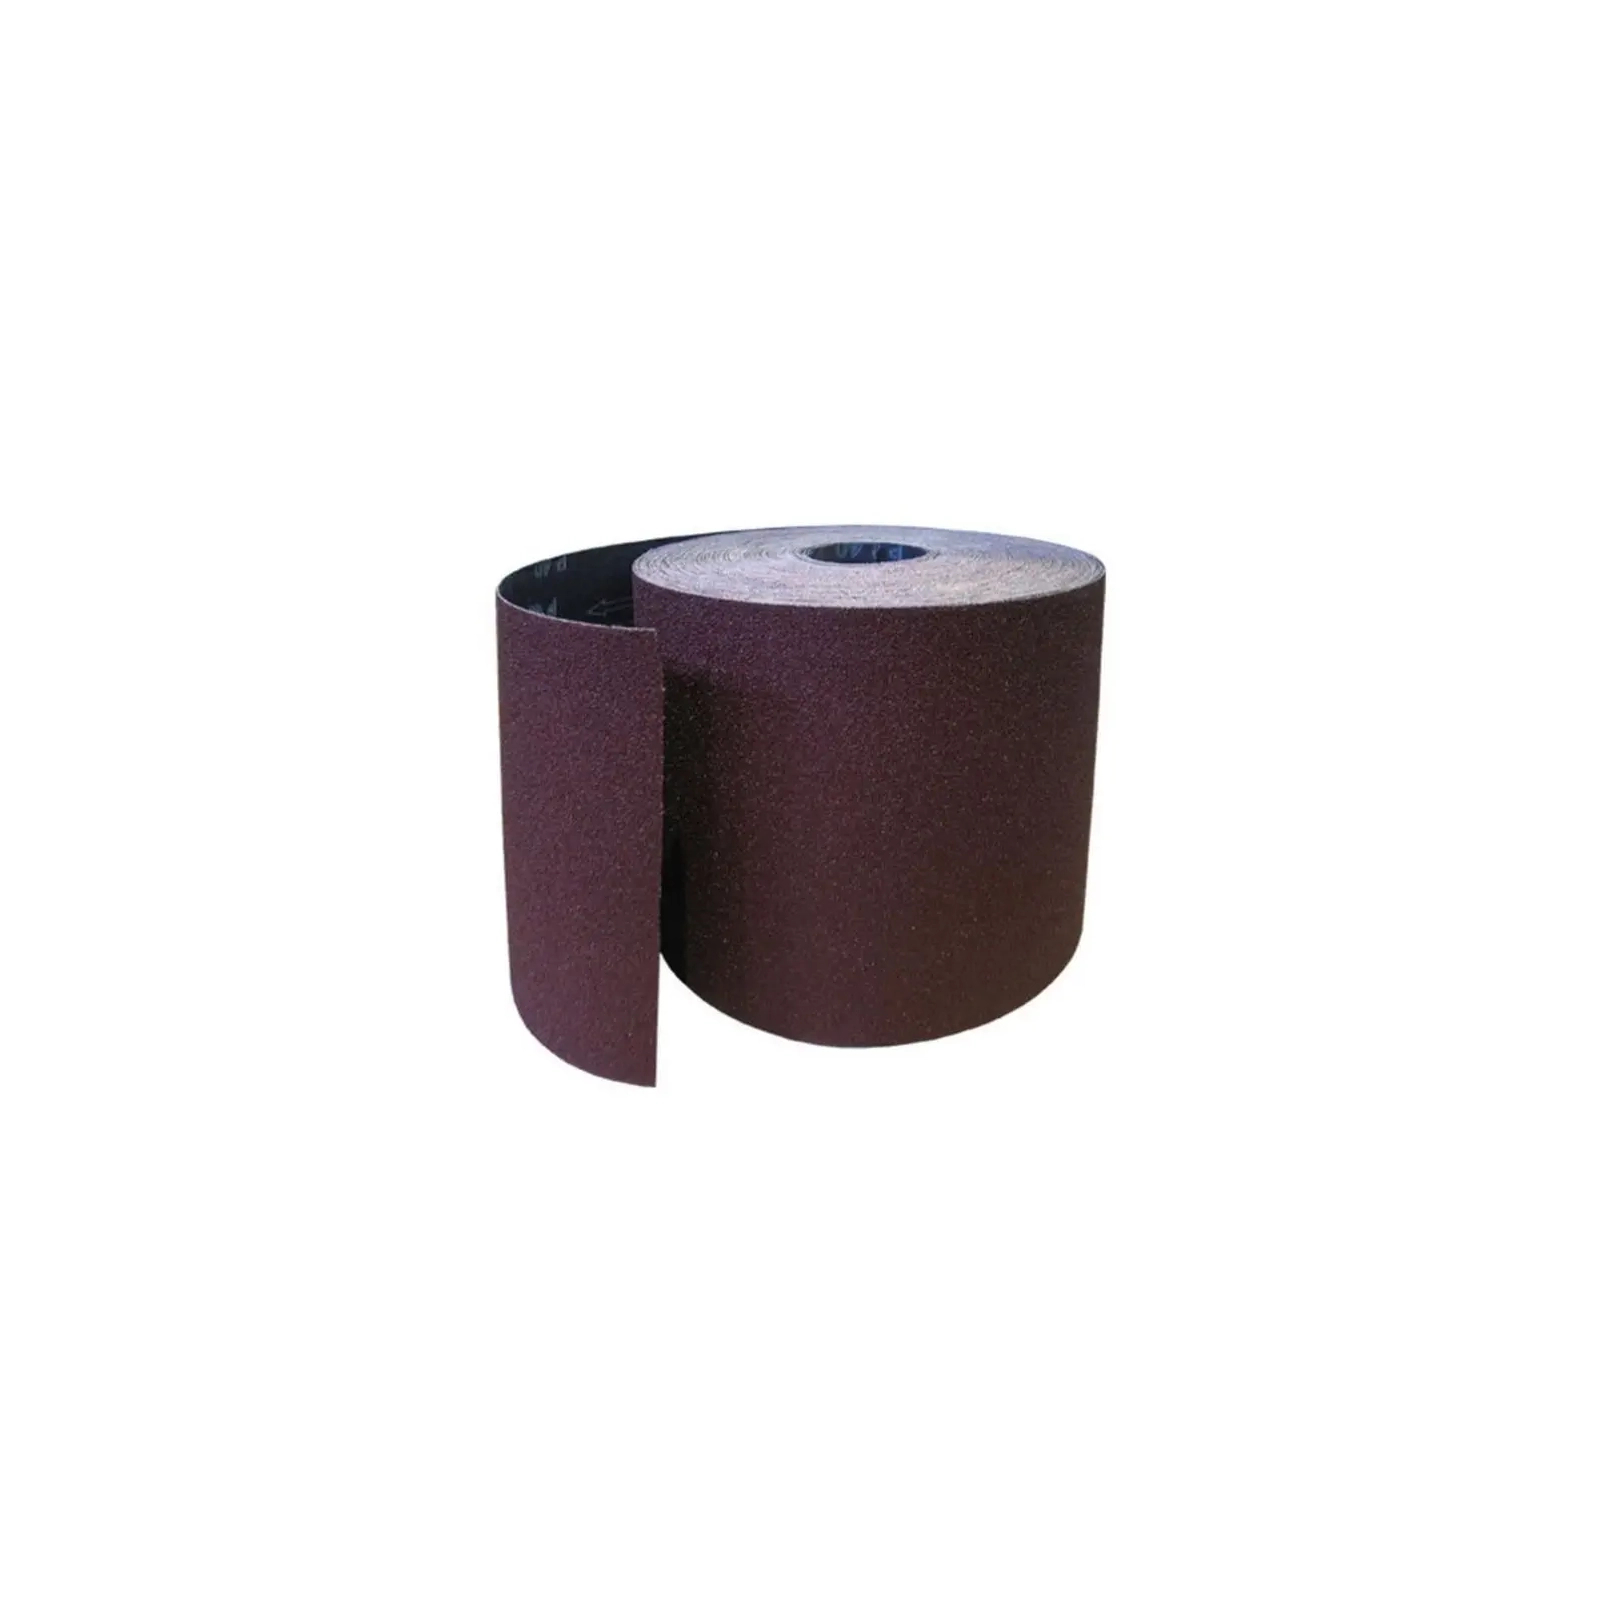 Наждачная бумага HAISSER бумажная основа – 115мм x 5м, зерно 100 (118531)